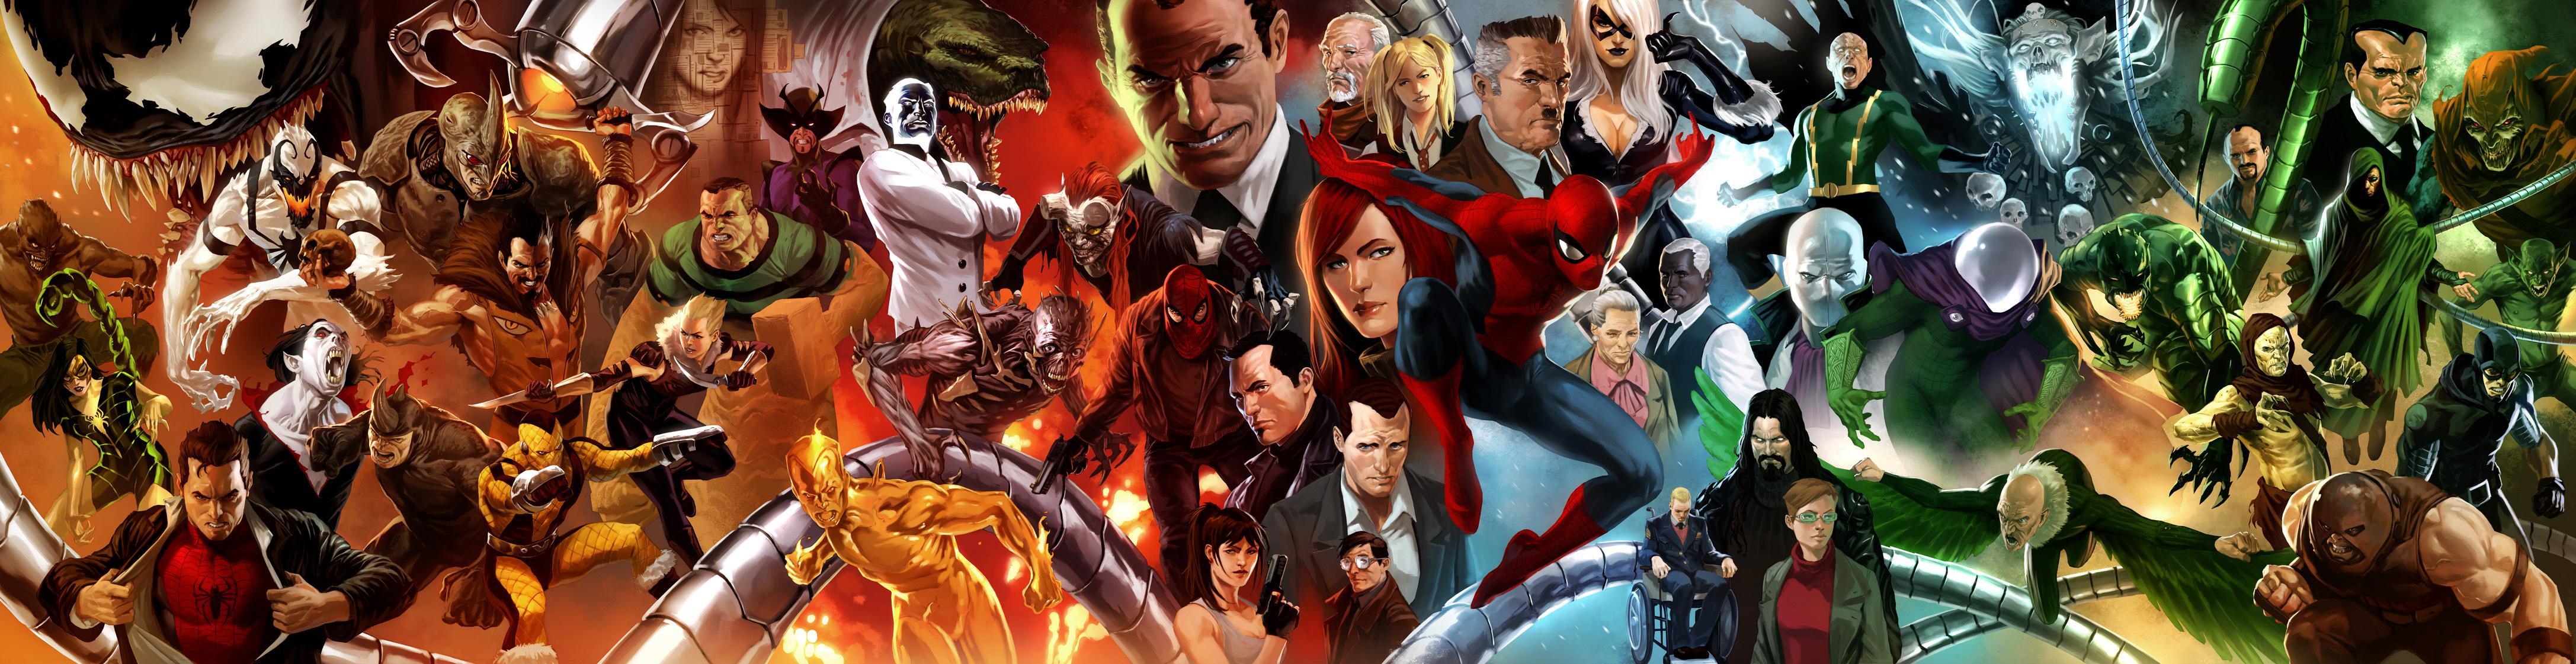 Comics, Spider Man, Marvel Comics Wallpaper